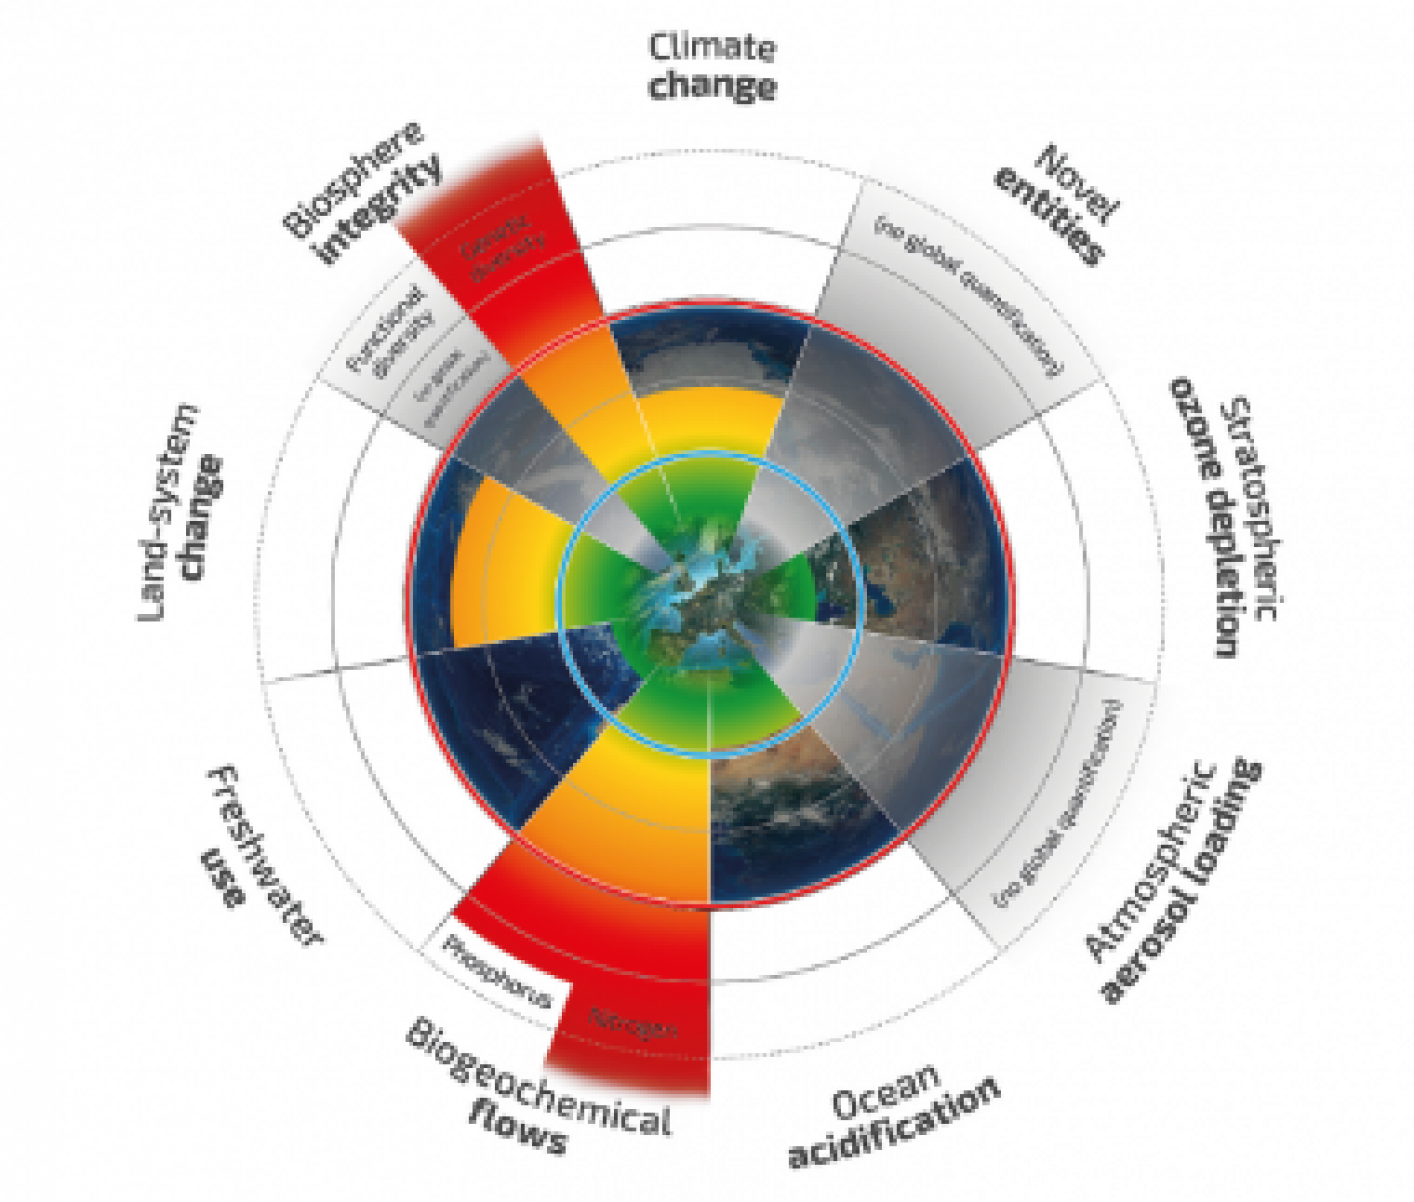 De illustratie laat zien hoe negen indicatoren voor de milieugrenzen van de aarde veranderd zijn sinds 1950